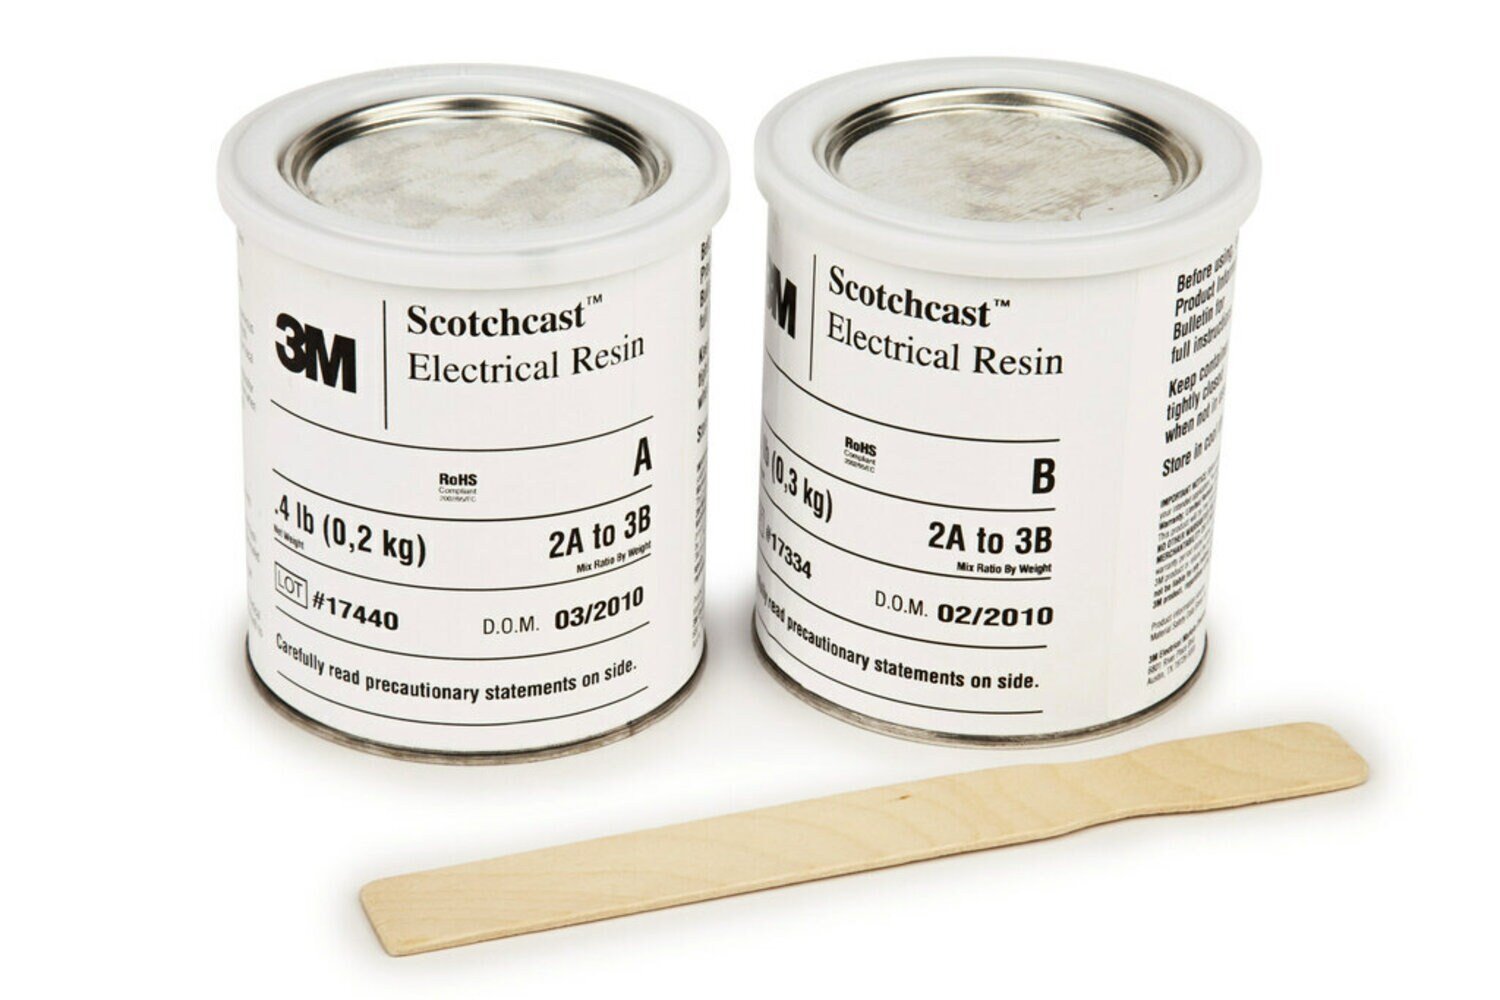 7010398562 - 3M Scotchcast Electrical Resin 282 Part A (30 lb.), 1 Drum